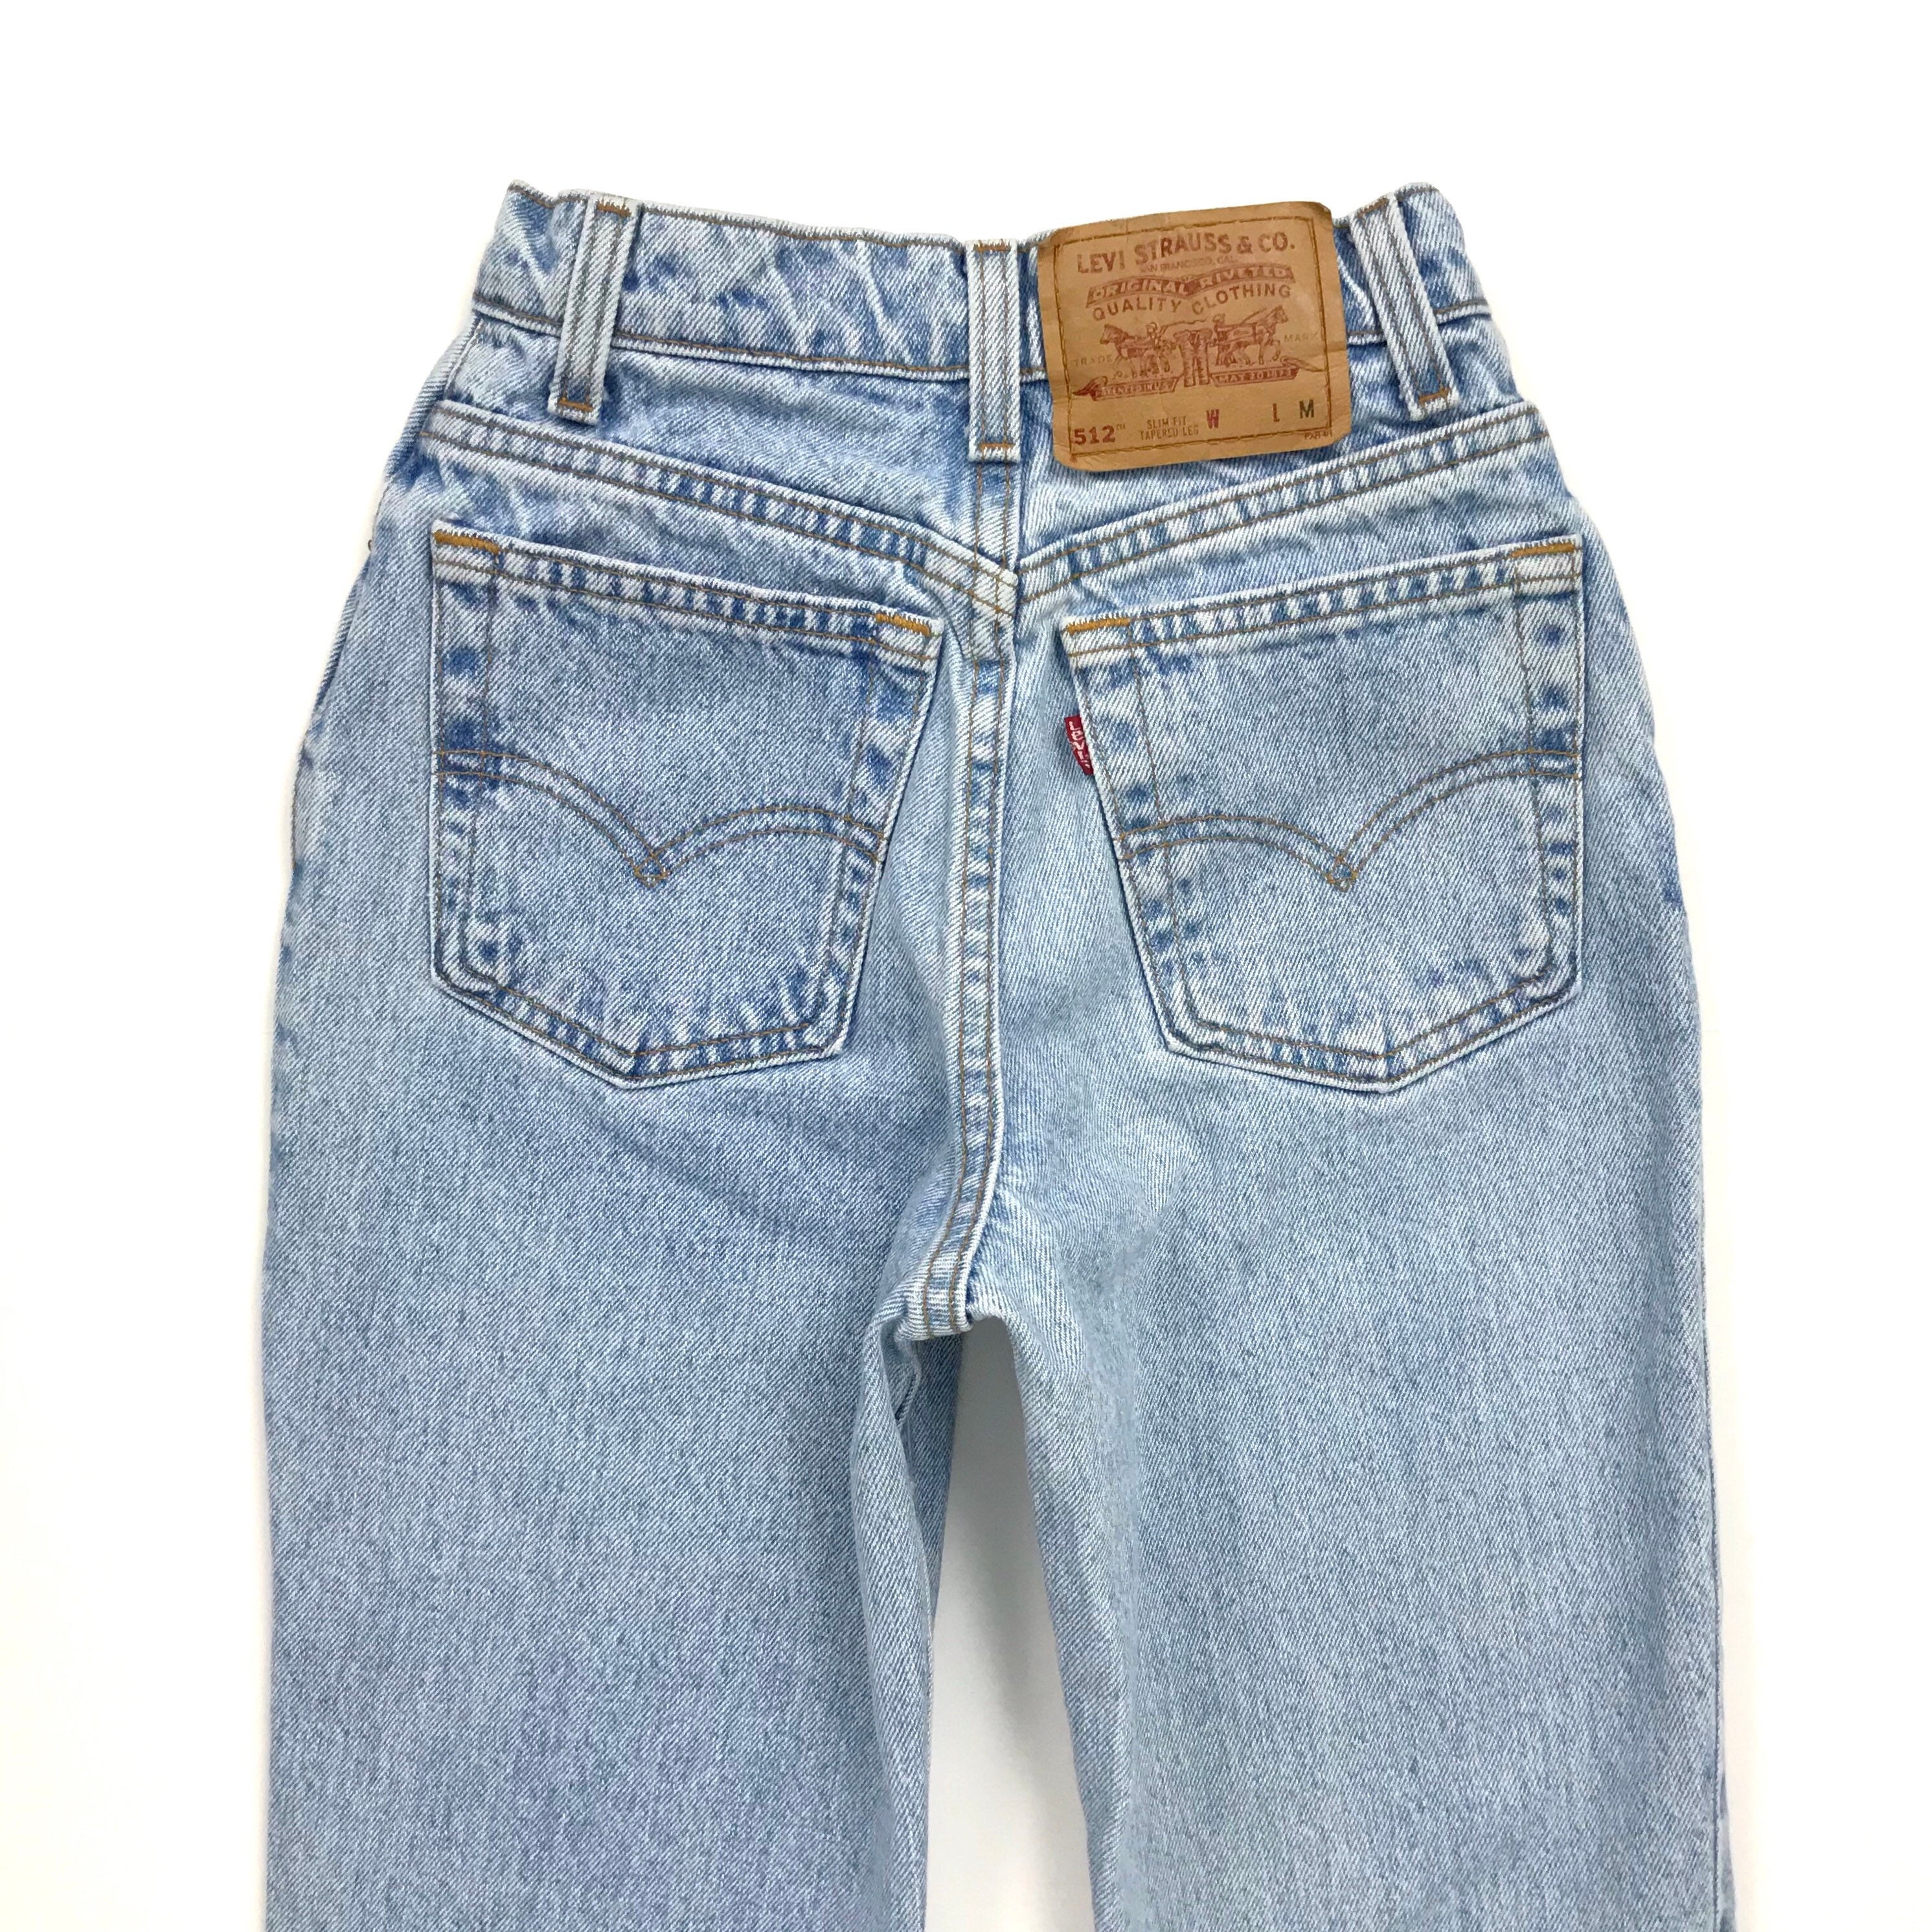 Vintage Levi's 512 Jeans / Size 22